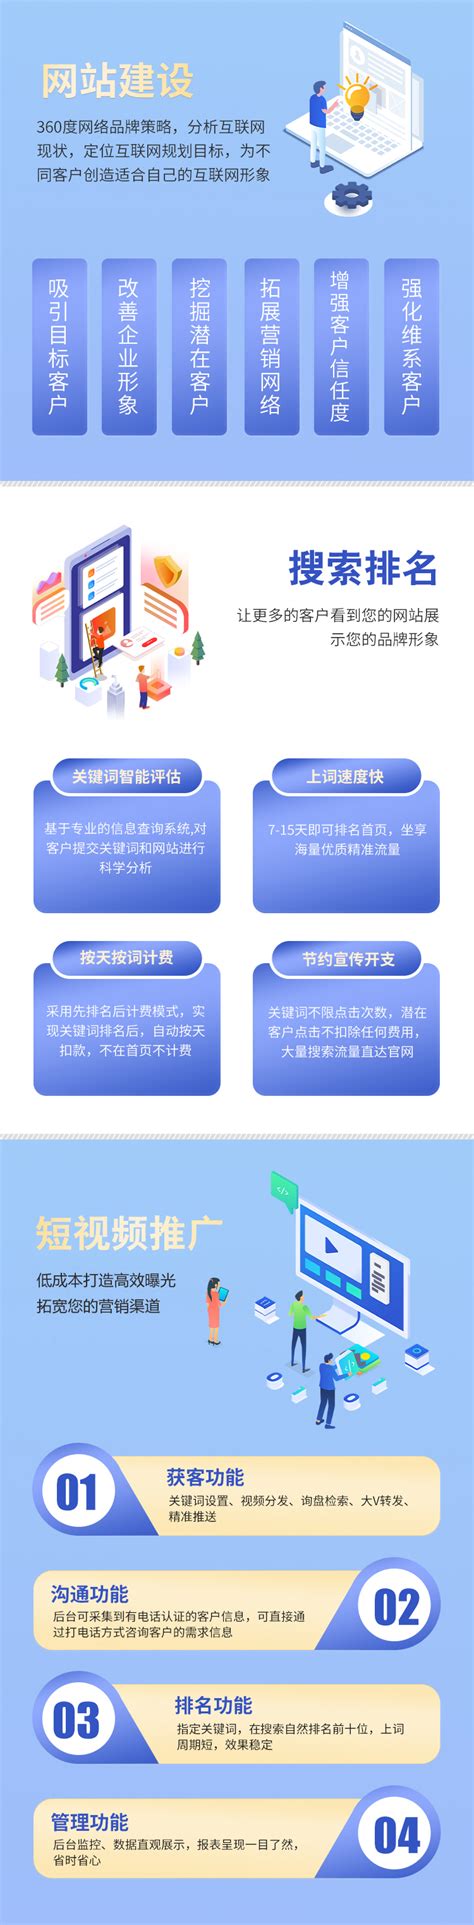 重庆网站建设的建议方案